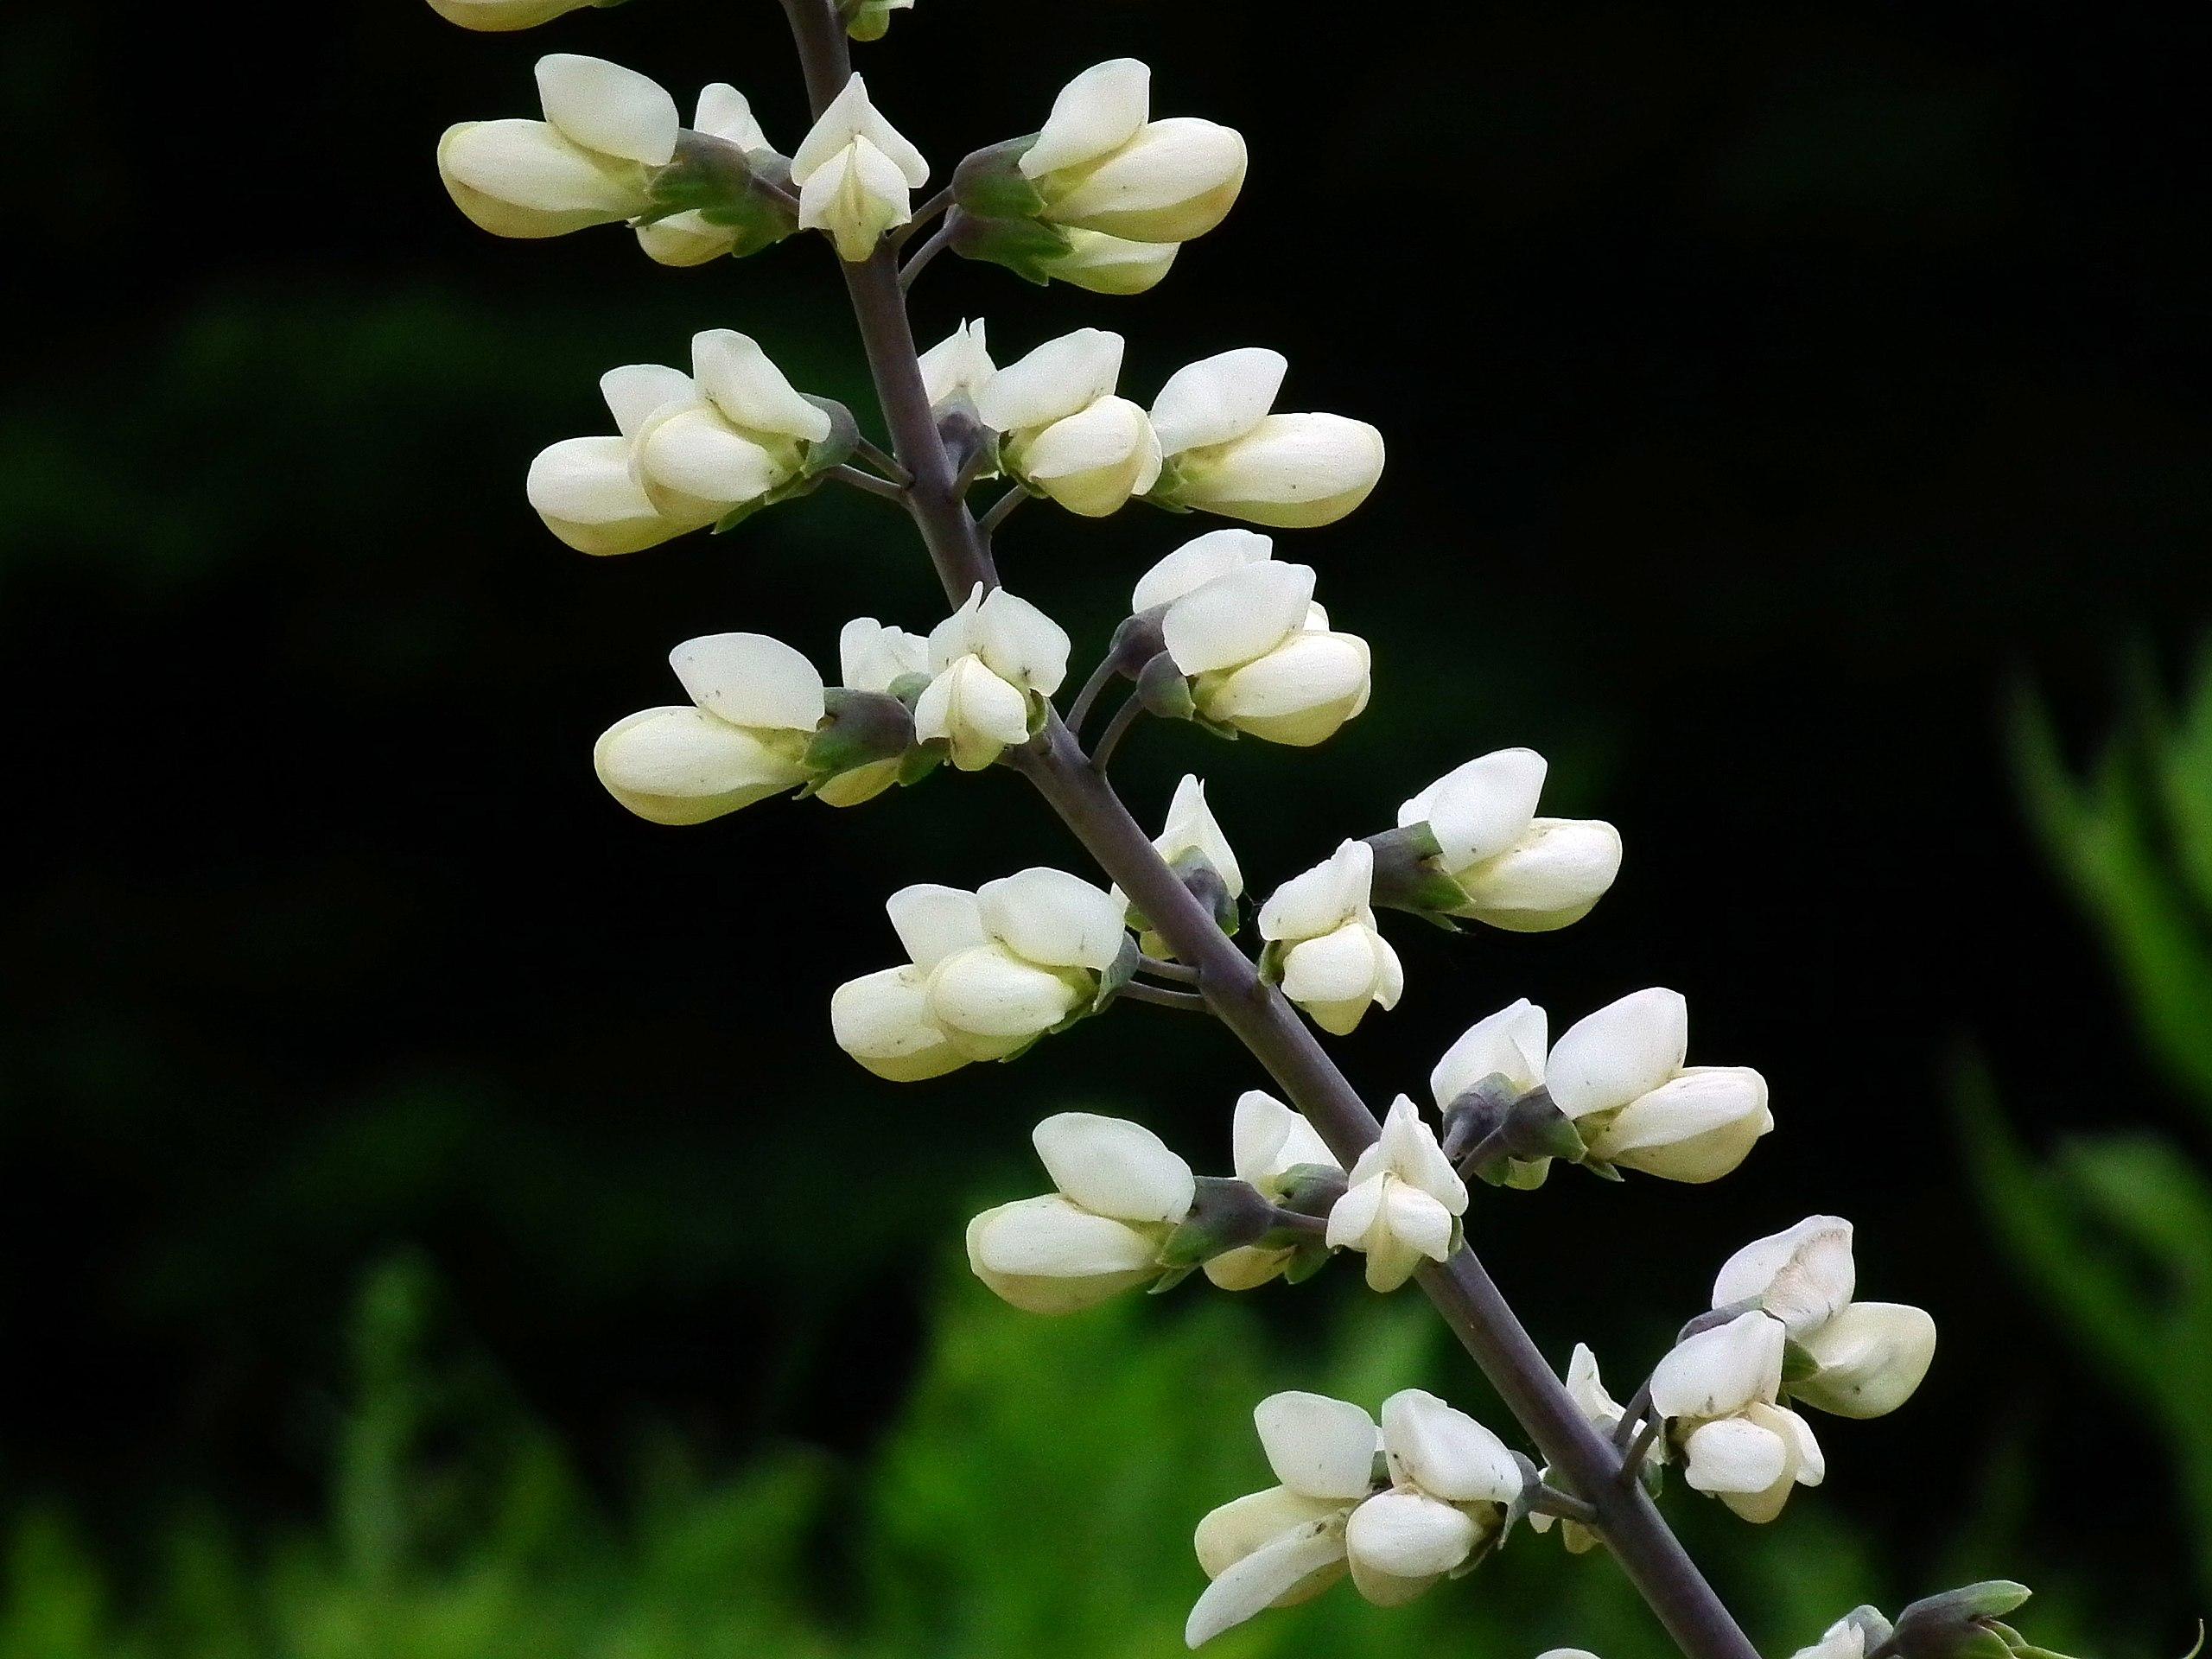 Off-white flowers with buds, dark-brown stem, dark-green sepals